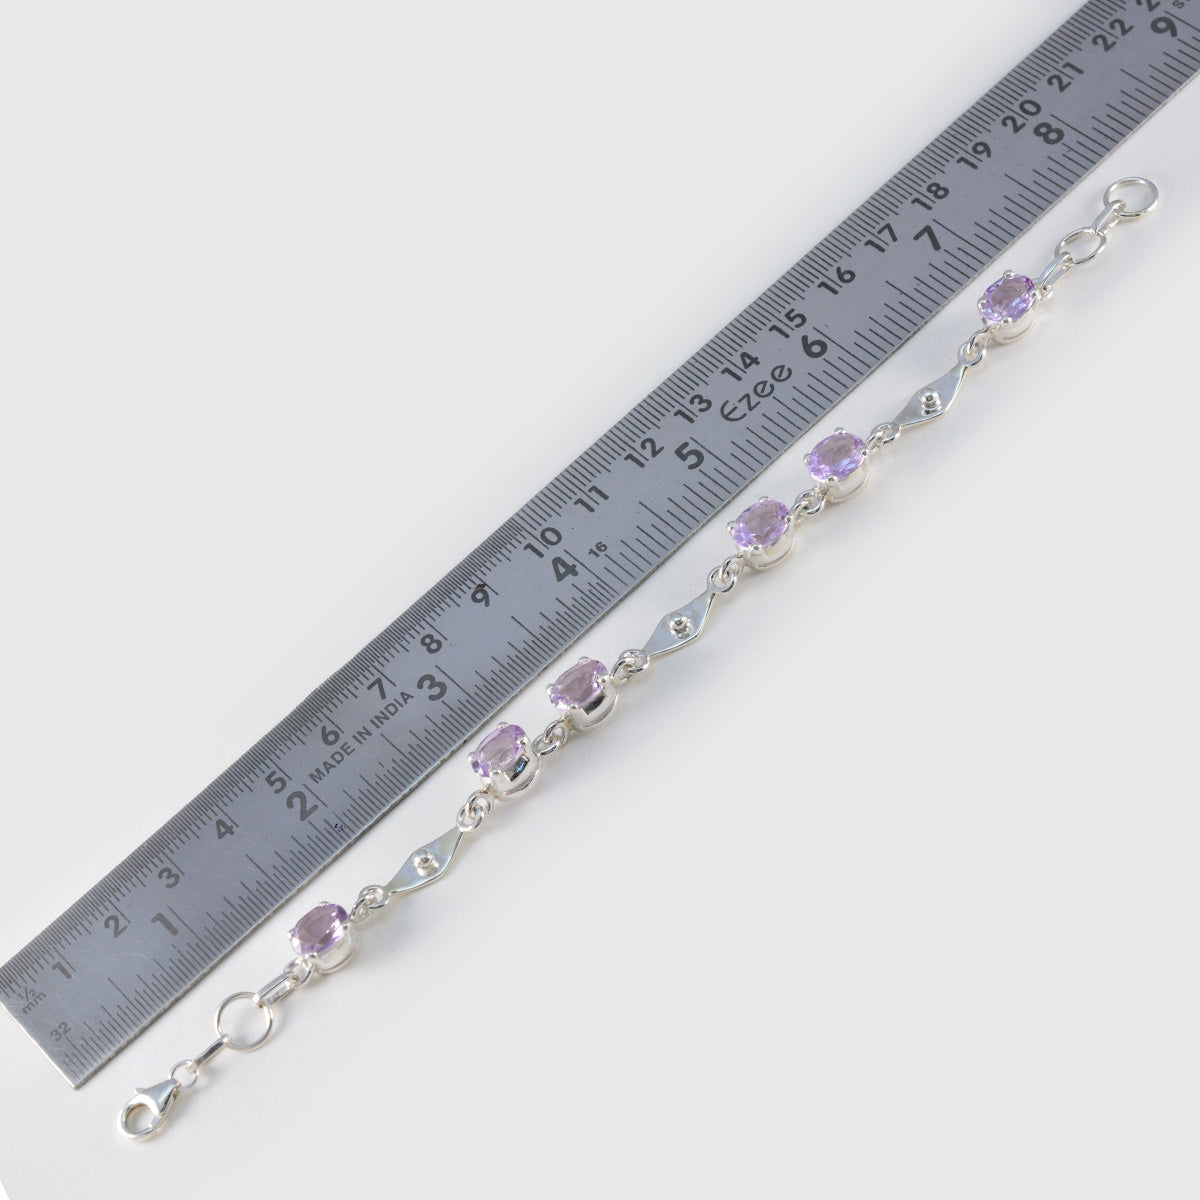 riyo klassiskt 925 sterling silver armband för kvinnor ametist armband utsprång inställning armband med fisk krok länk armband l storlek 6-8,5 tum.